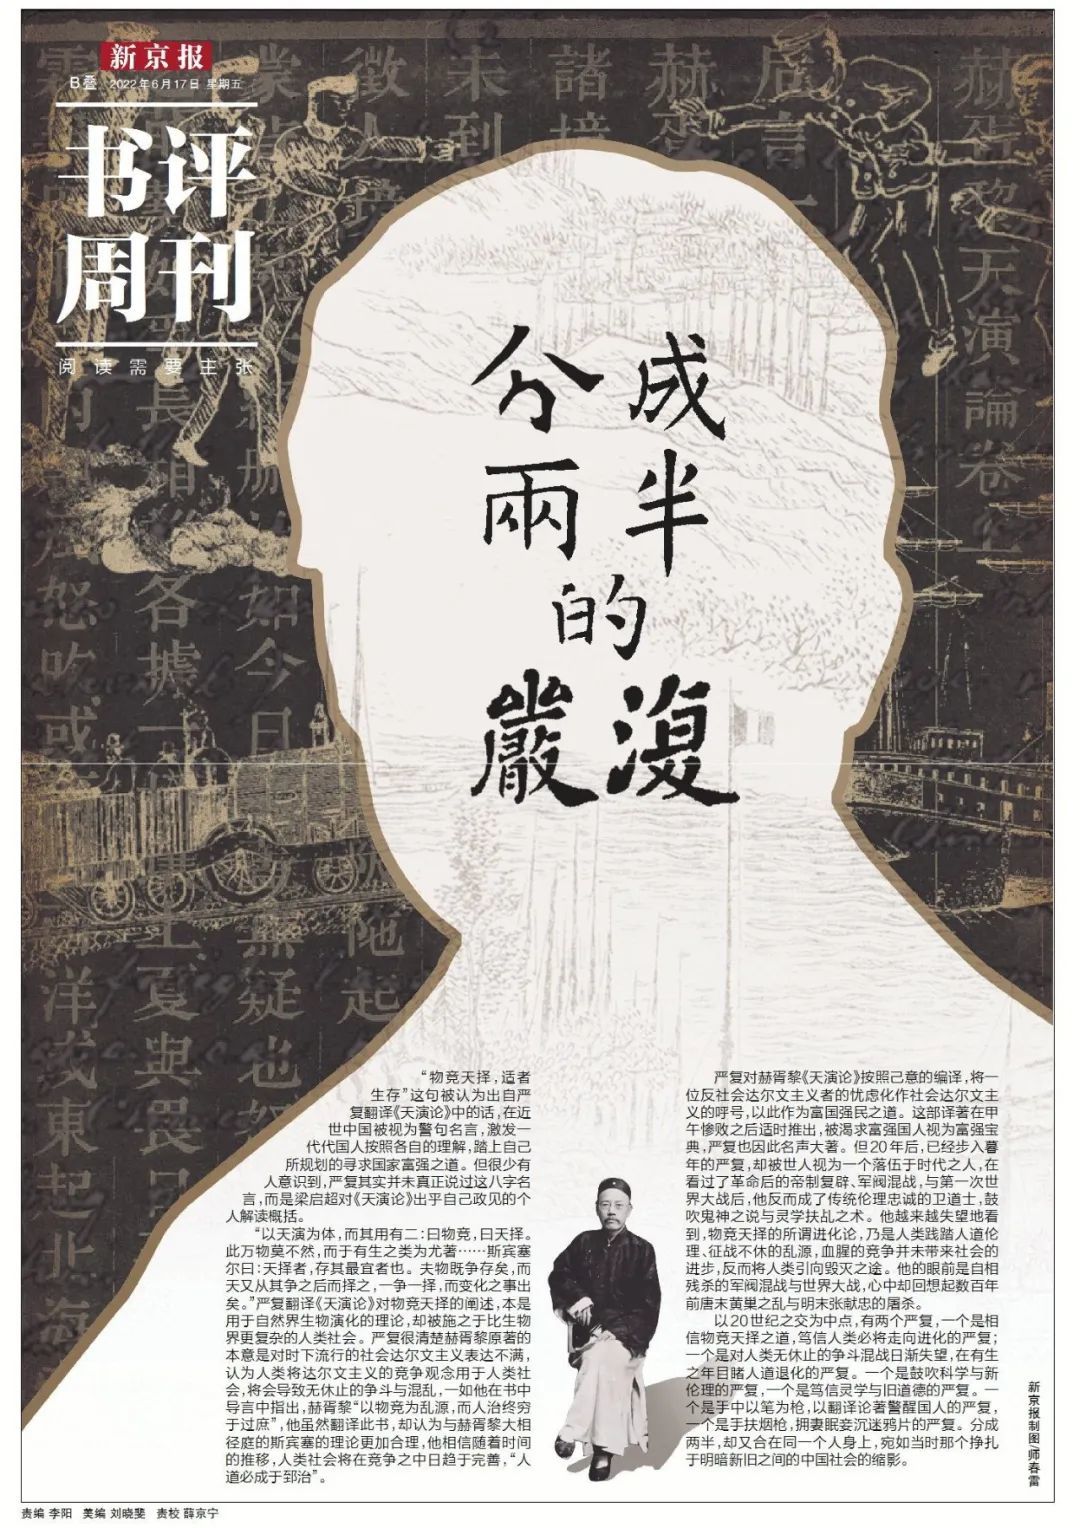 本文出自《新京报·书评周刊》6月17日专题《分成两半的严复》的B04-B05版。